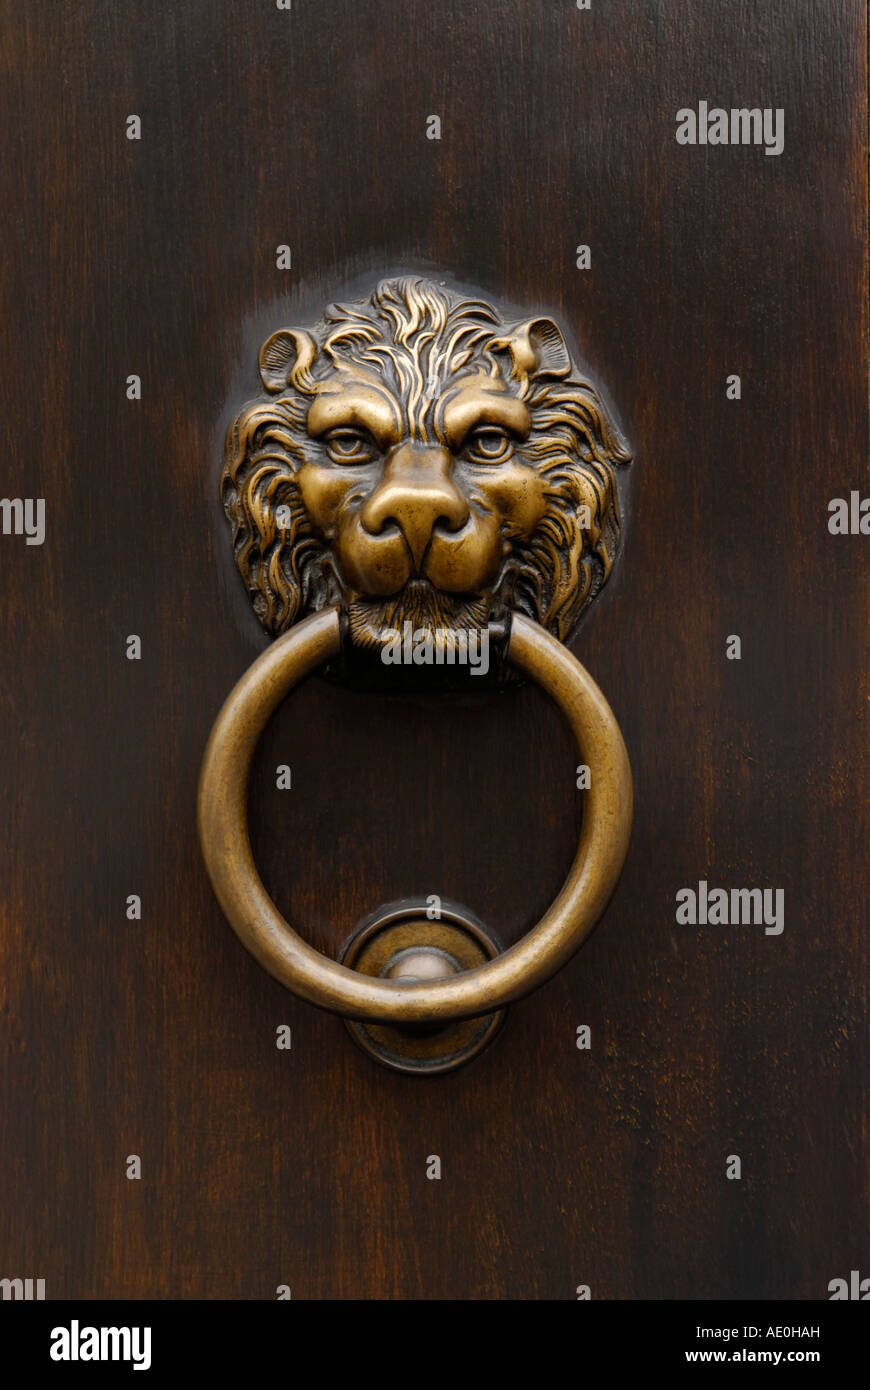 Lion's head door knocker Stock Photo